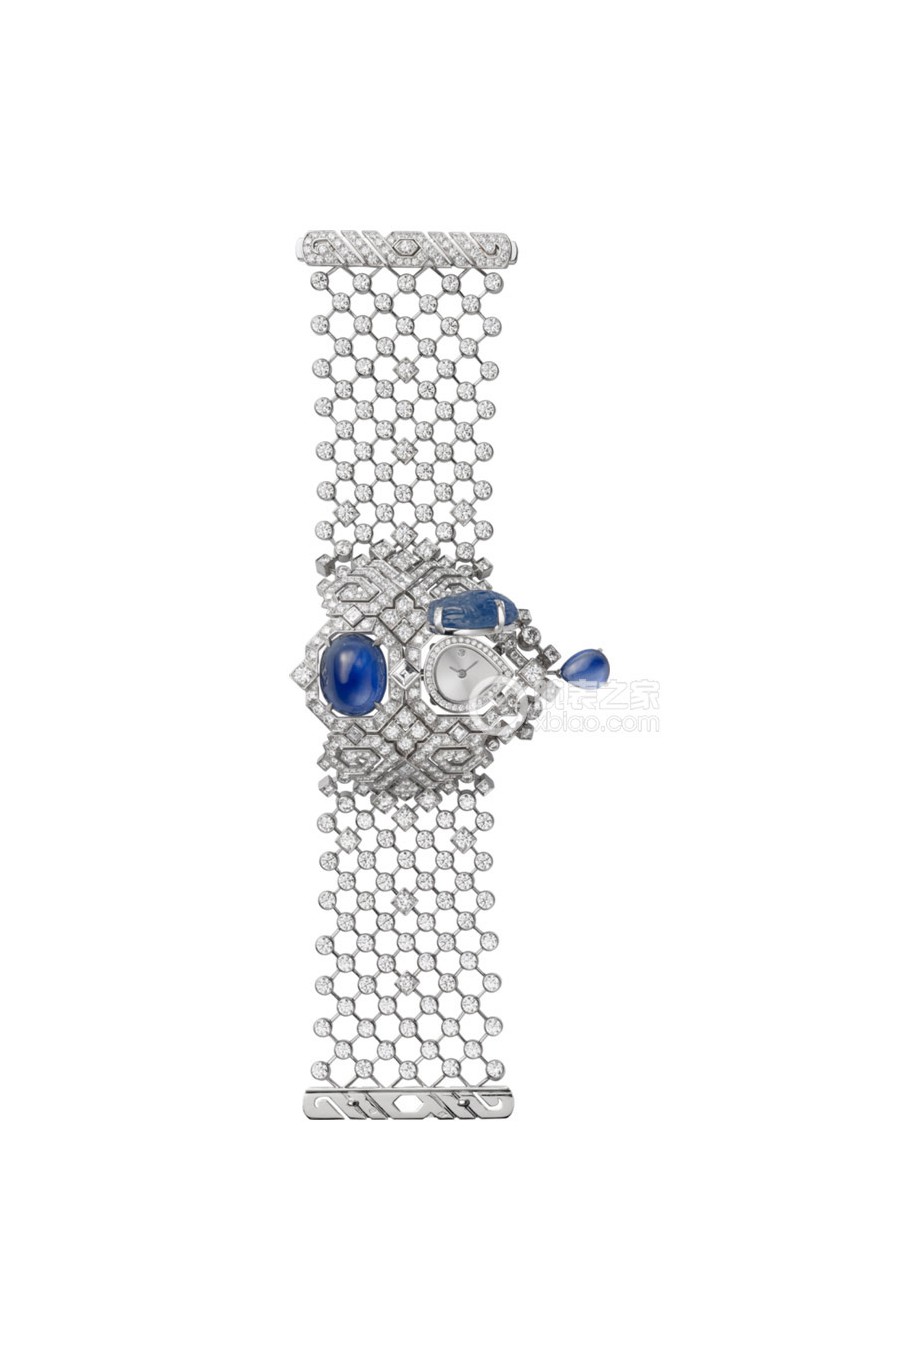 卡地亚创意宝石腕表系列HPI00487